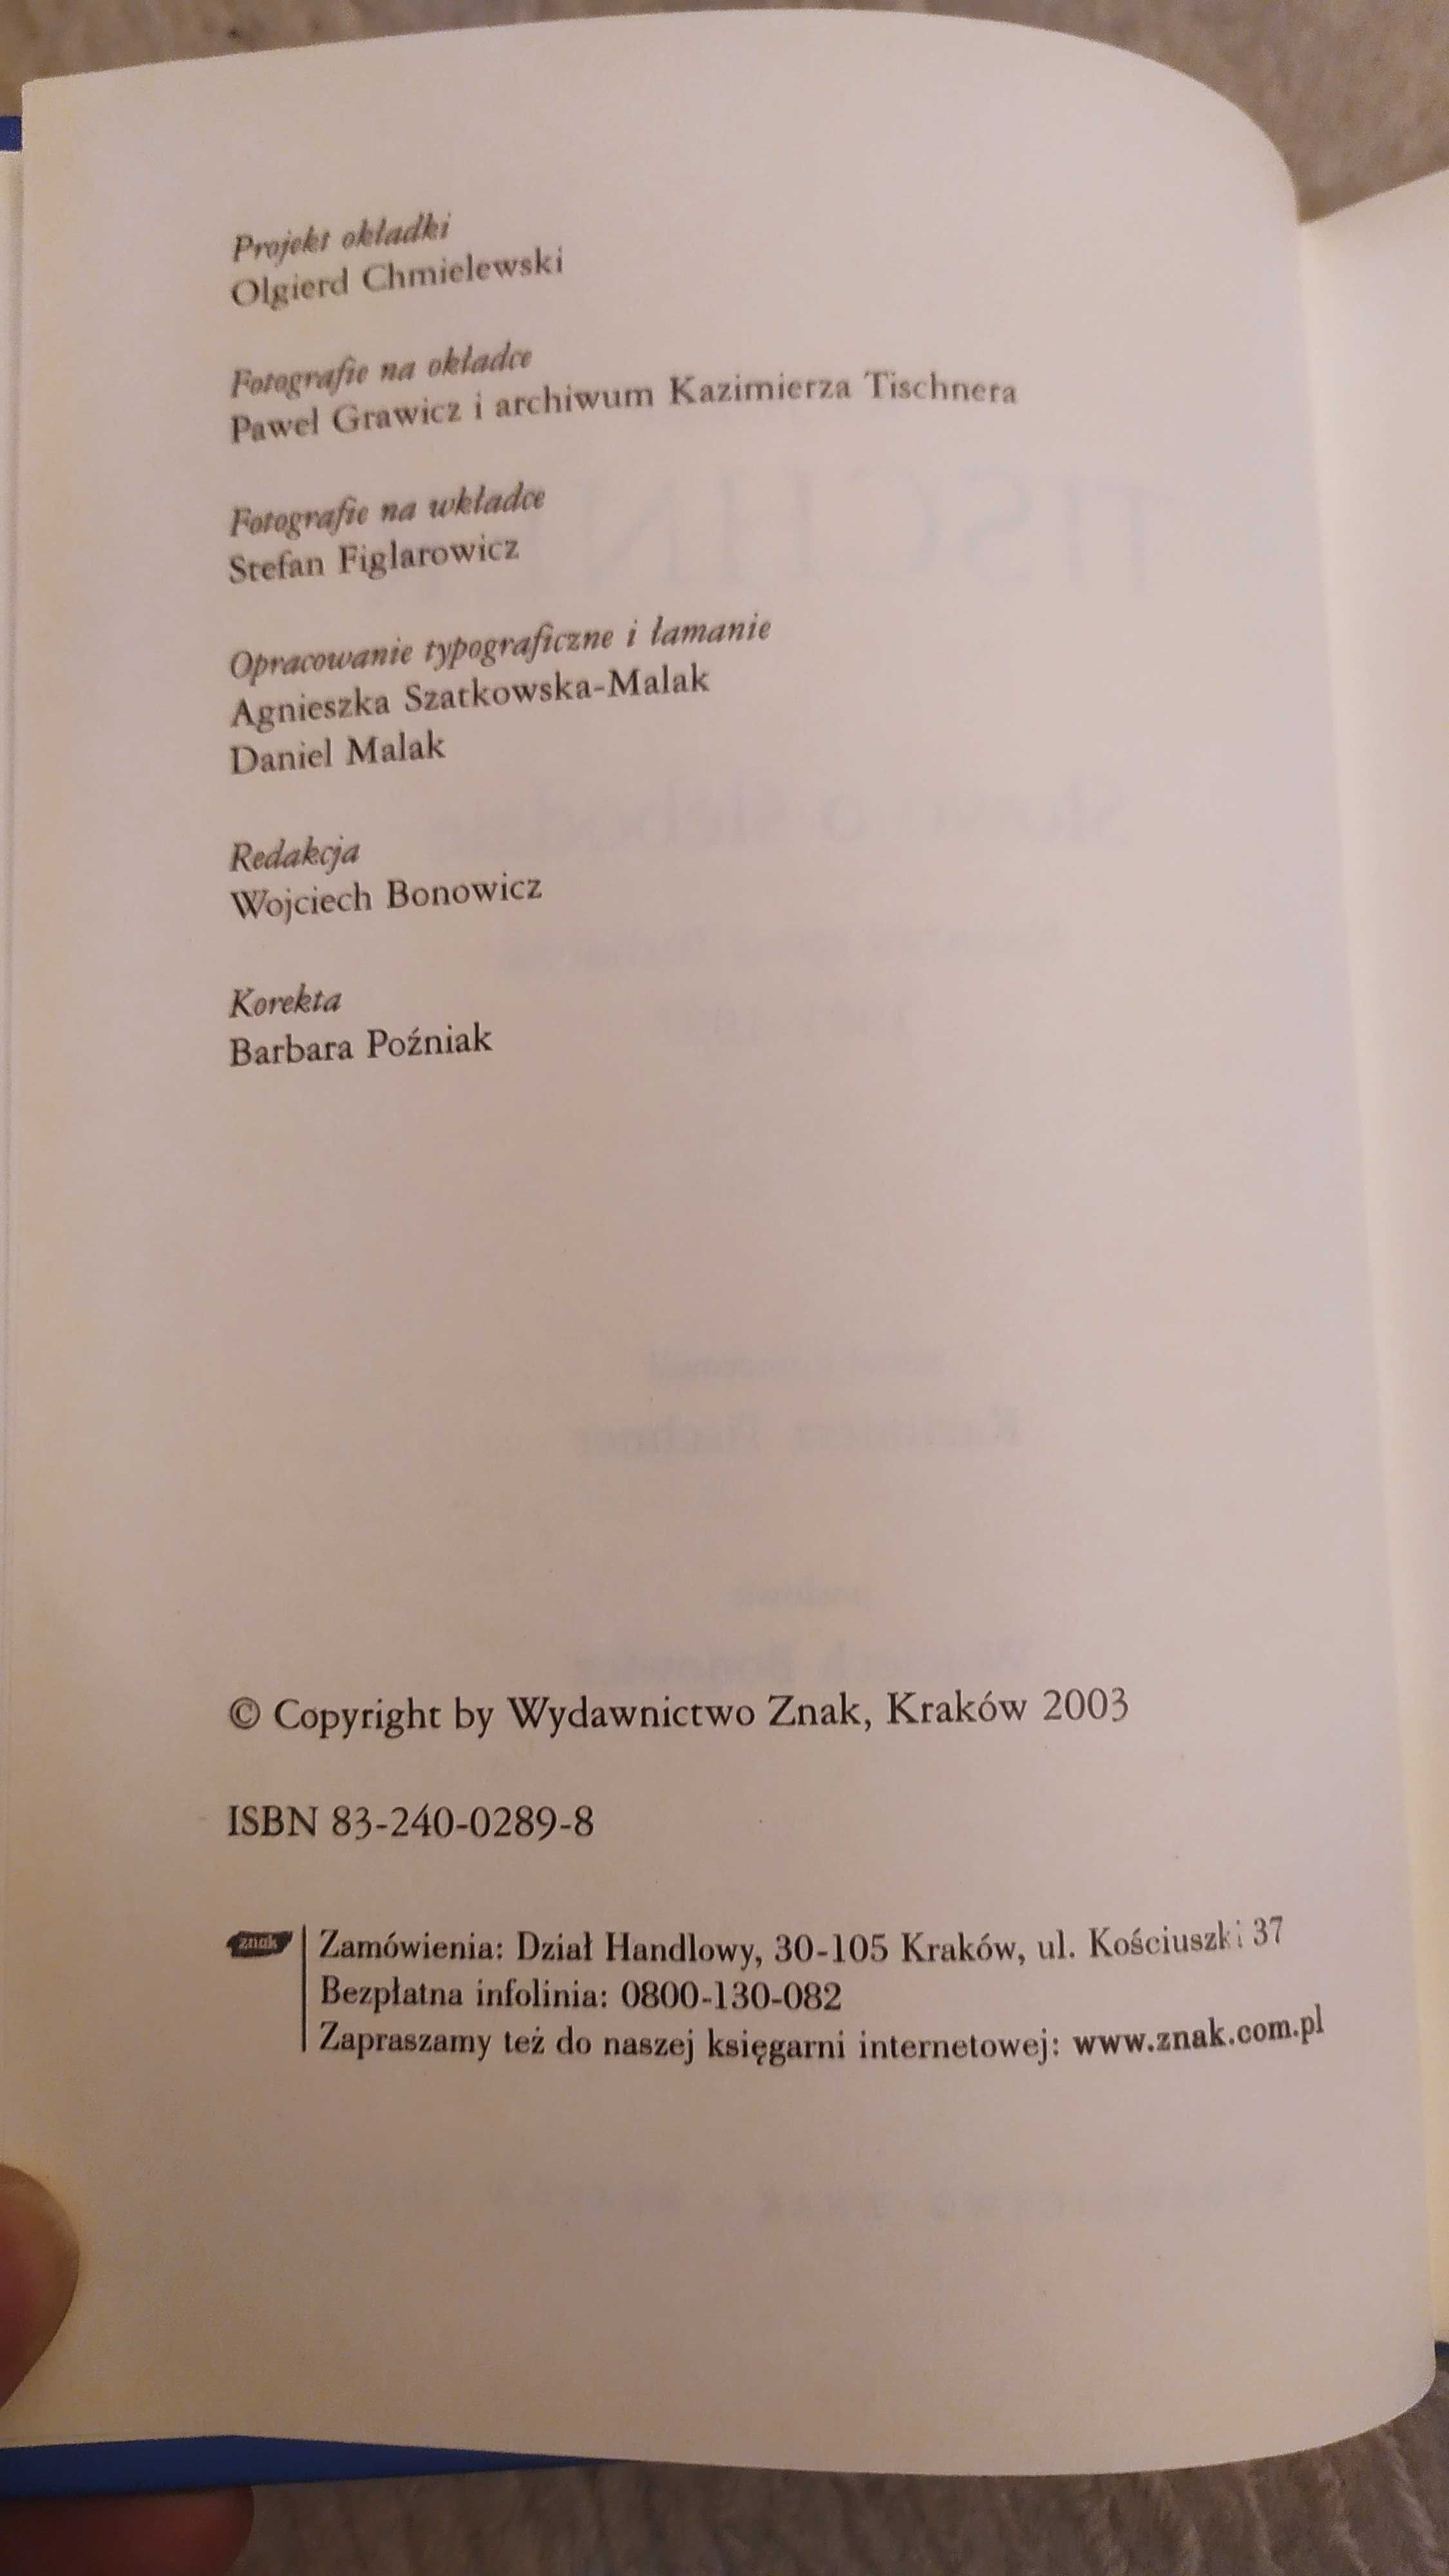 cztery płyty CD wraz z książką, Słowo o ślebodzie ks. Józefa Tischnera